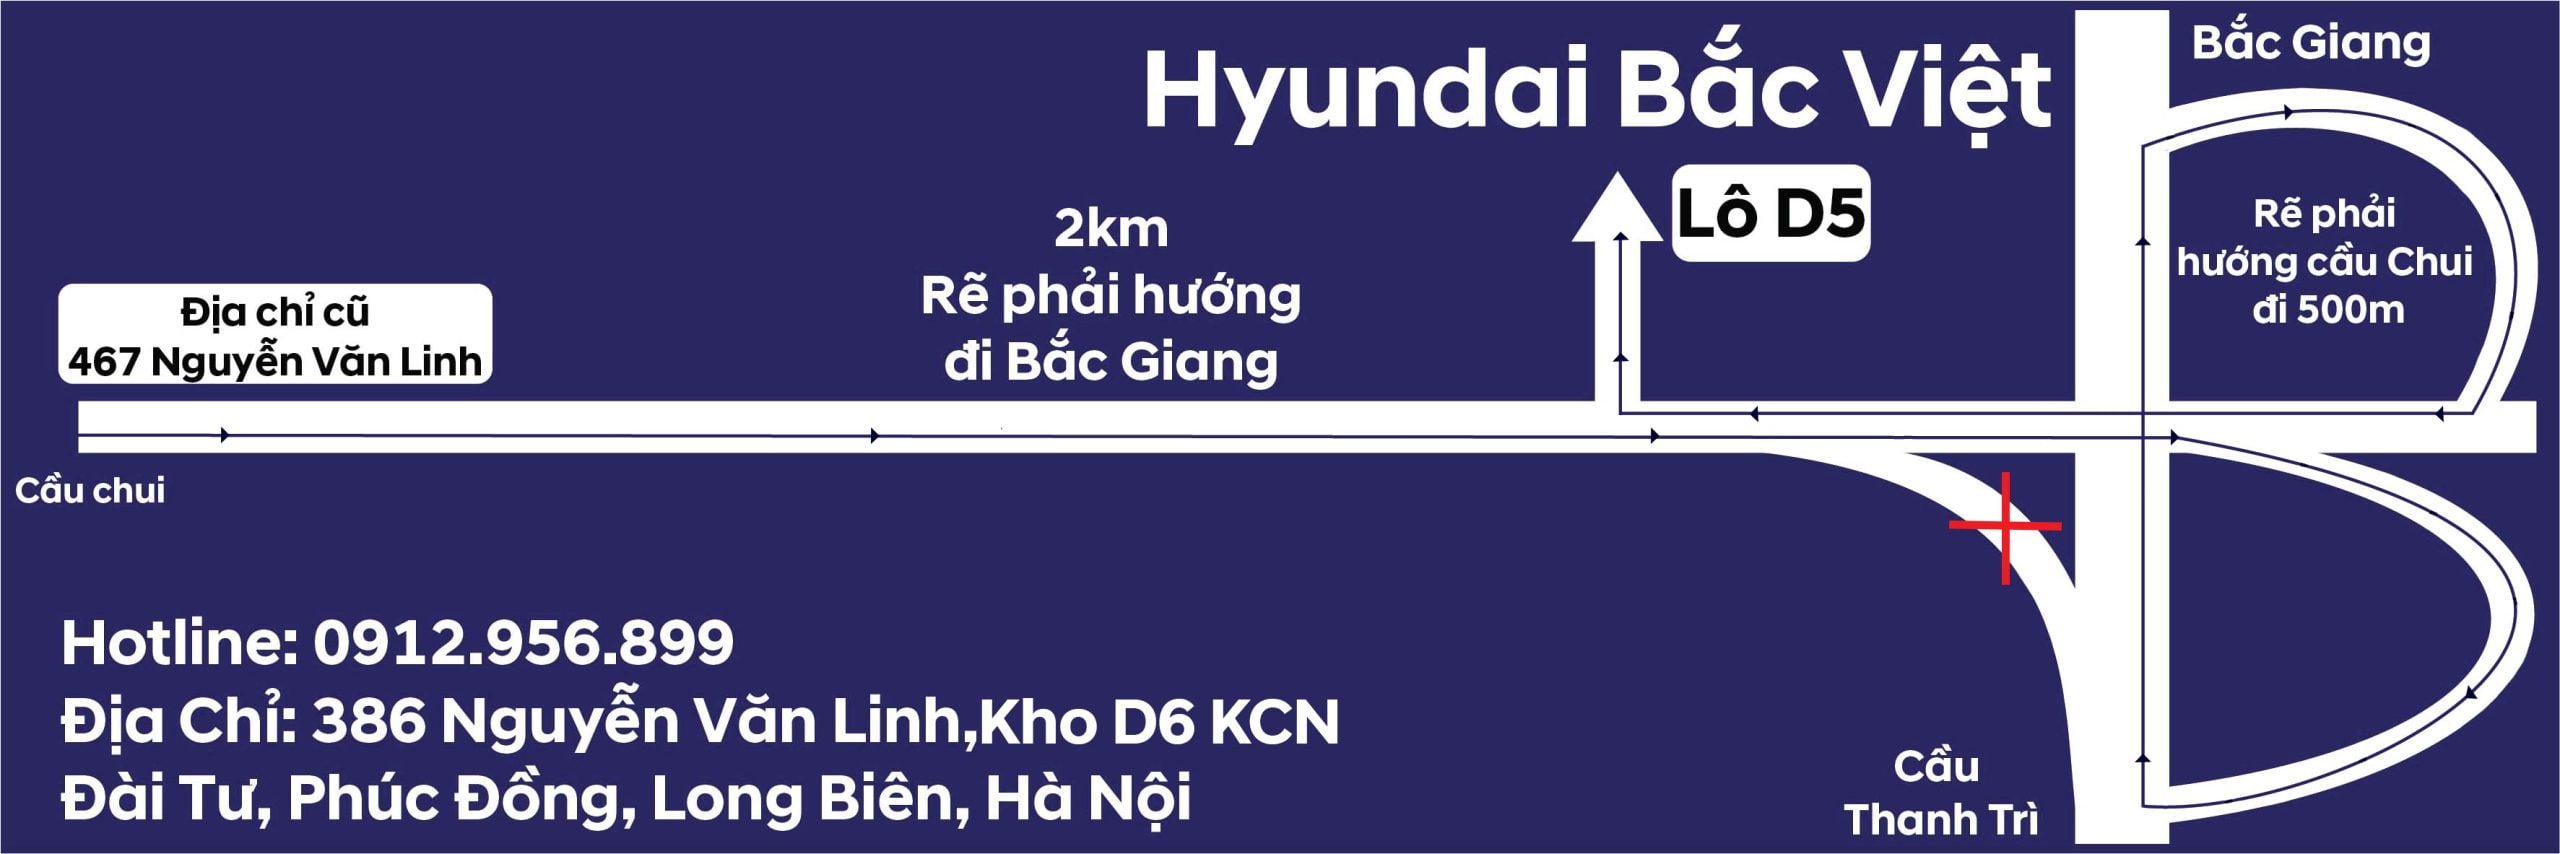 Hướng dẫn khách hàng đến địa điểm mới Hyundai Bắc Việt – KCN Đài Tư